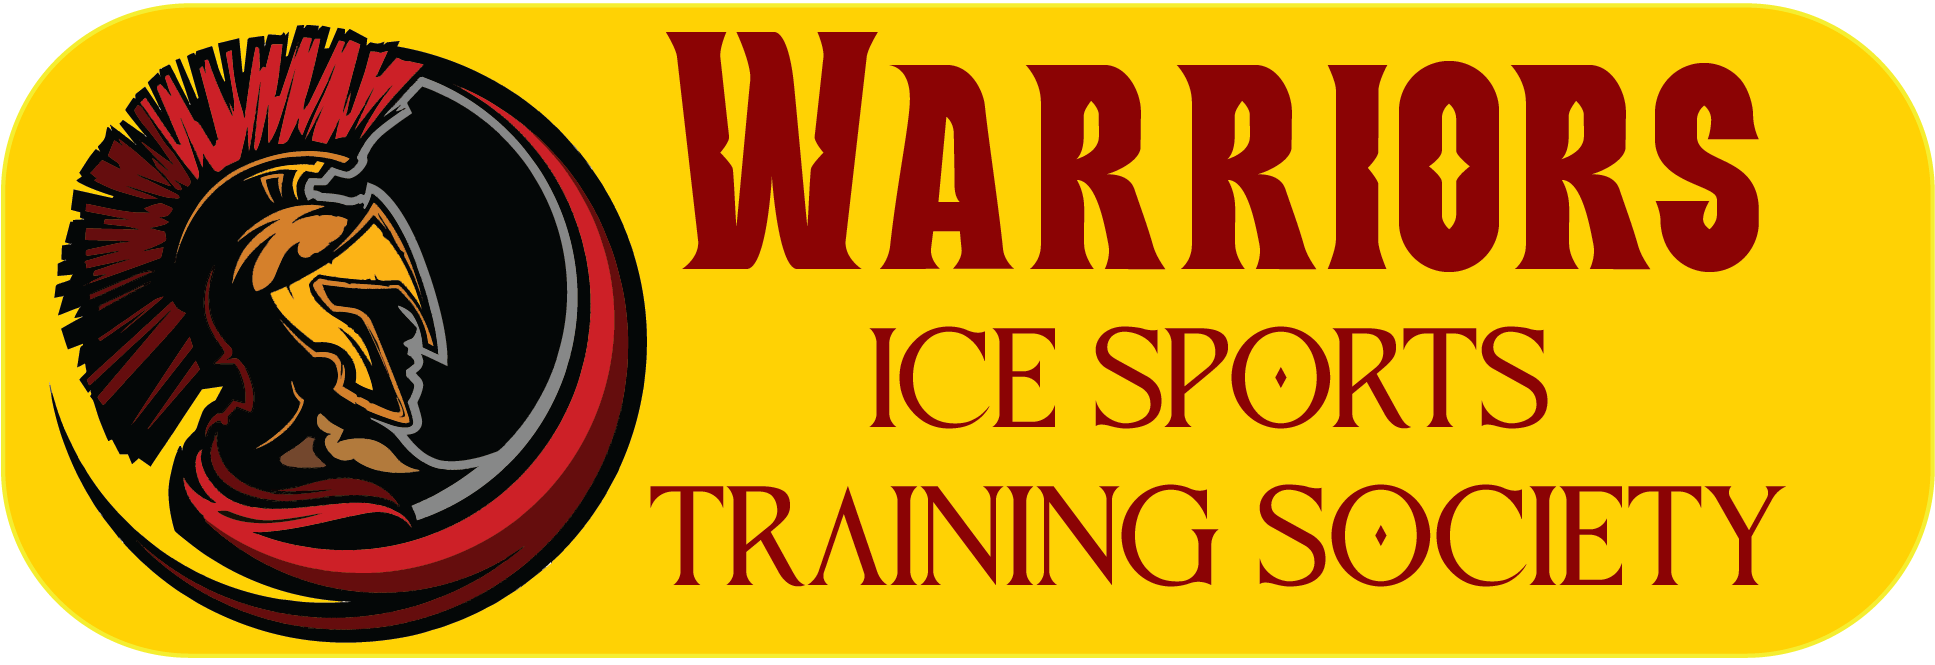 Warriors Ice Sports Training Society